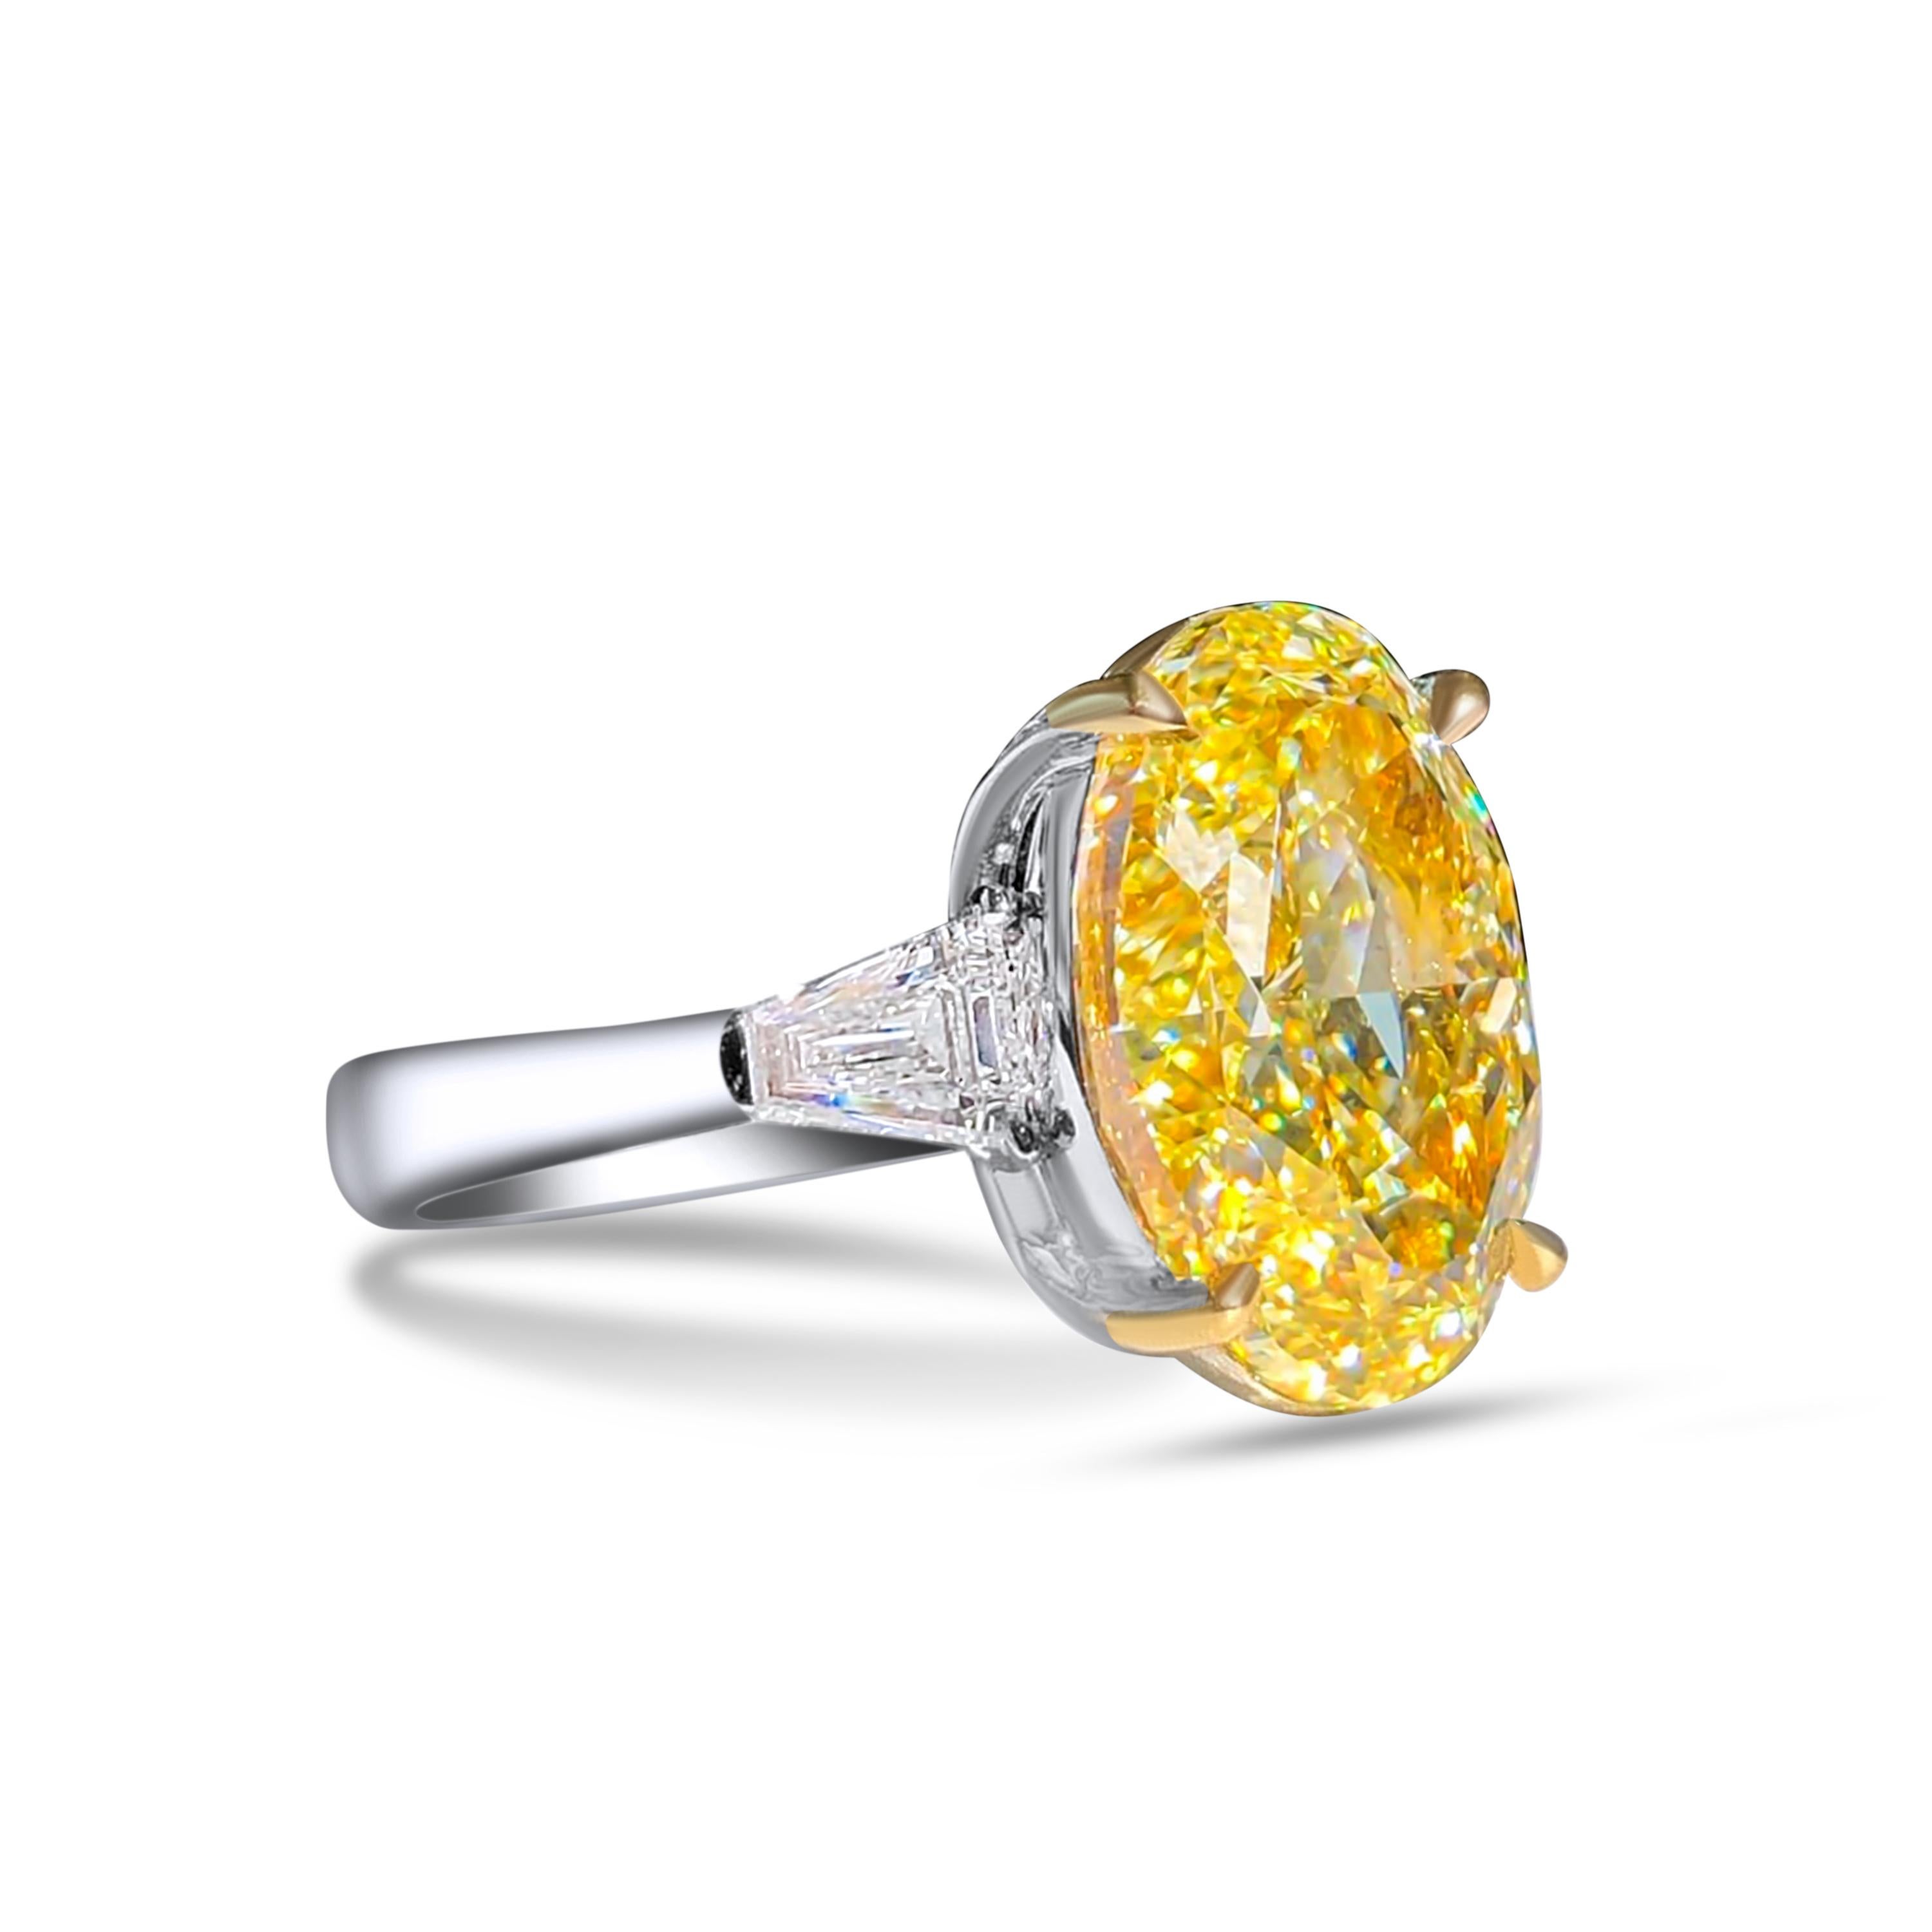 Wir laden Sie ein, diesen eleganten und majestätischen Verlobungsring mit einem 10 Karat GIA-zertifizierten ovalen Diamanten im Fancy-Gelb-Schliff zu entdecken, der von zwei farblosen Diamanten im Baguetteschliff akzentuiert wird. 

Neuer Ring